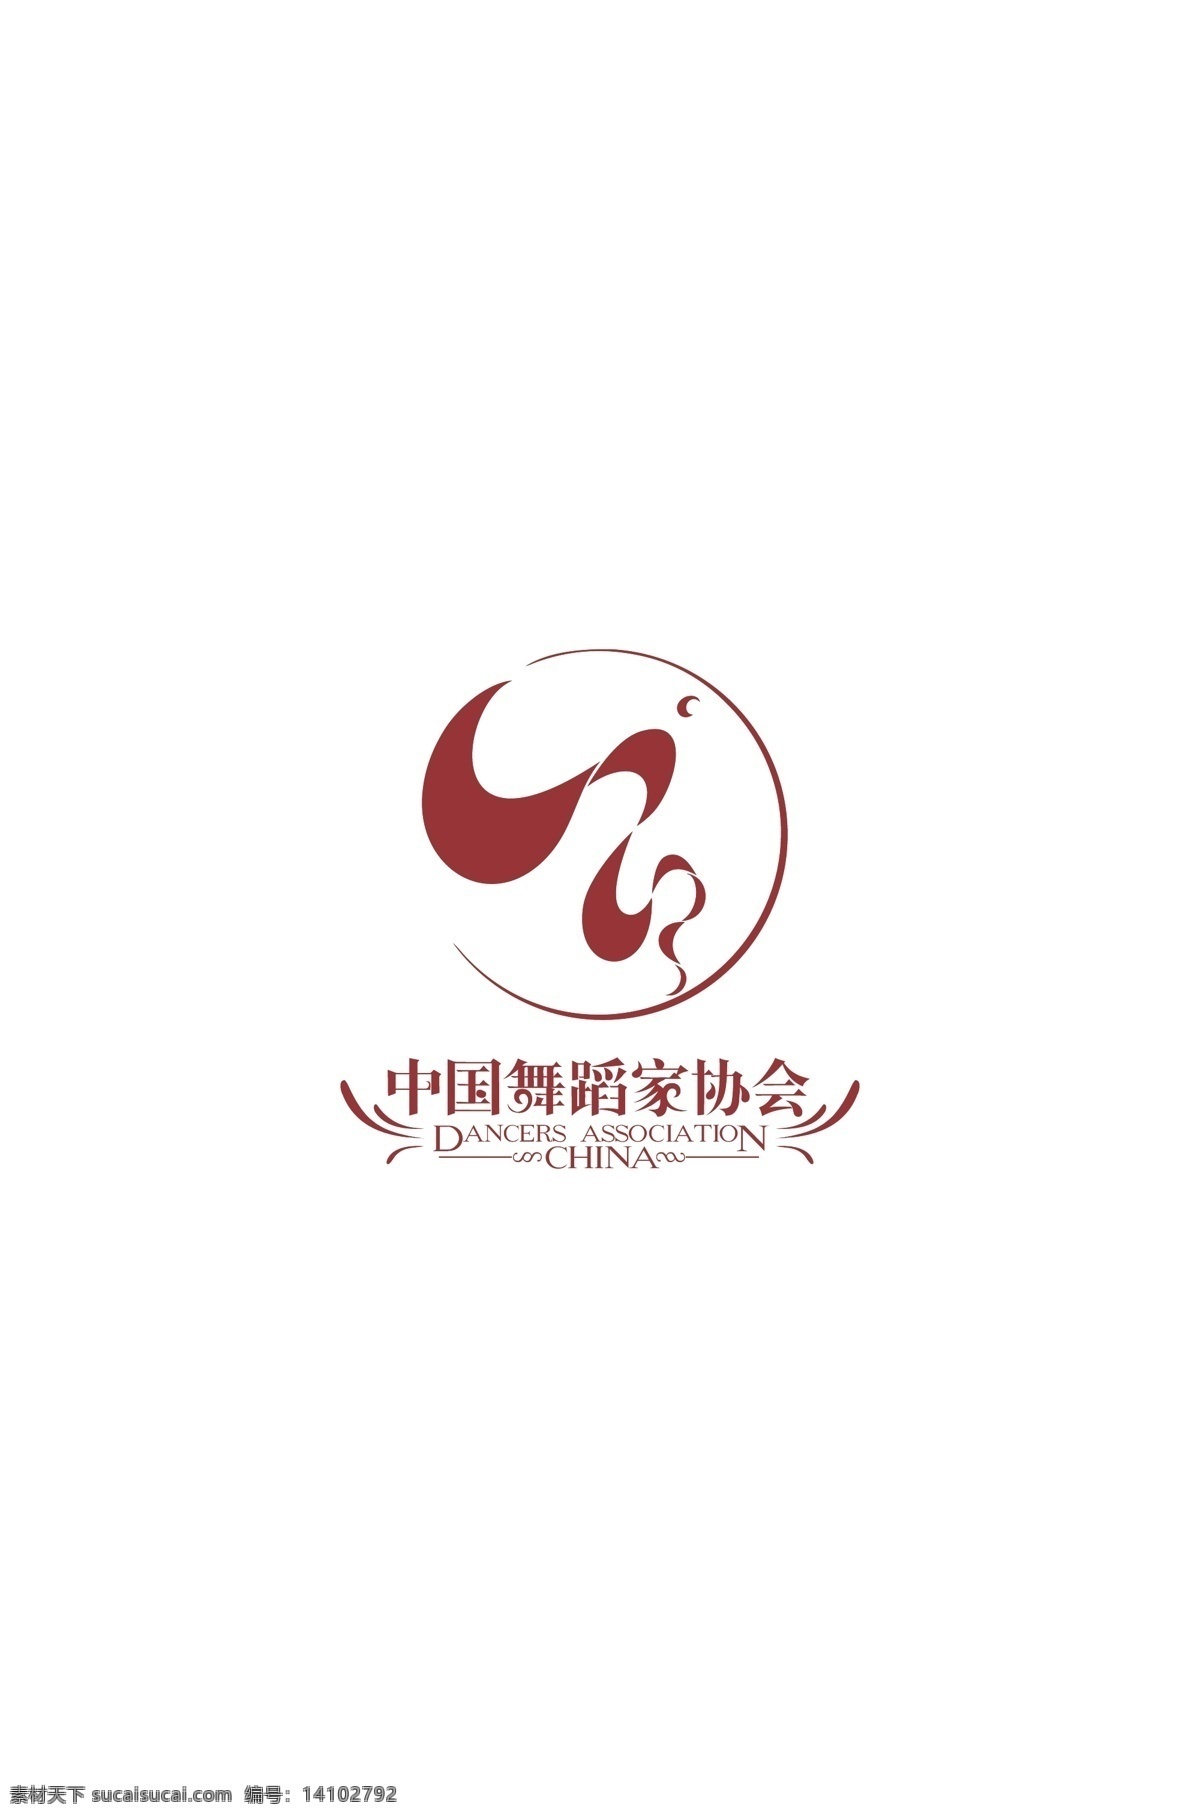 中国舞蹈家协会 logo 舞蹈家 协会logo 舞蹈家协会 会徽 协会标志 logo设计